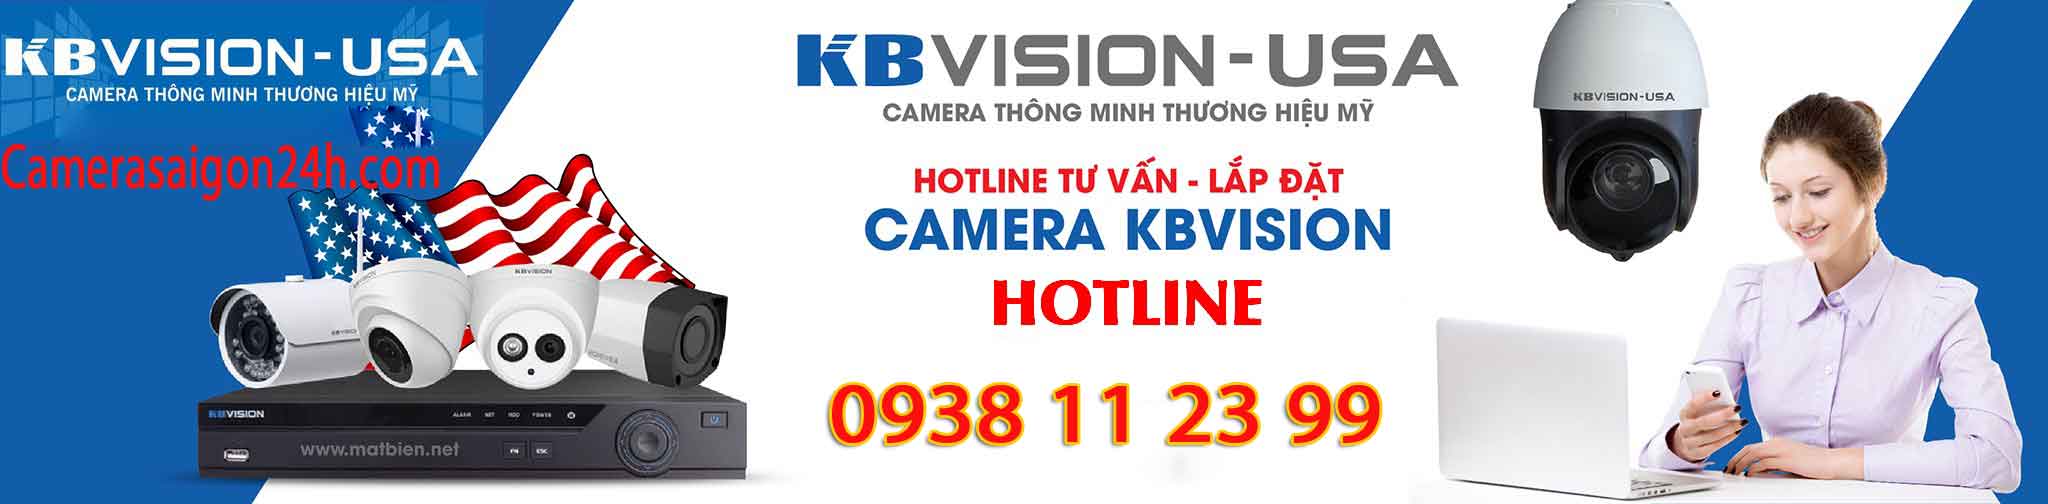 báo giá lắp camera kbvision giá rẻ chất lượng dịch vụ tốt nhất